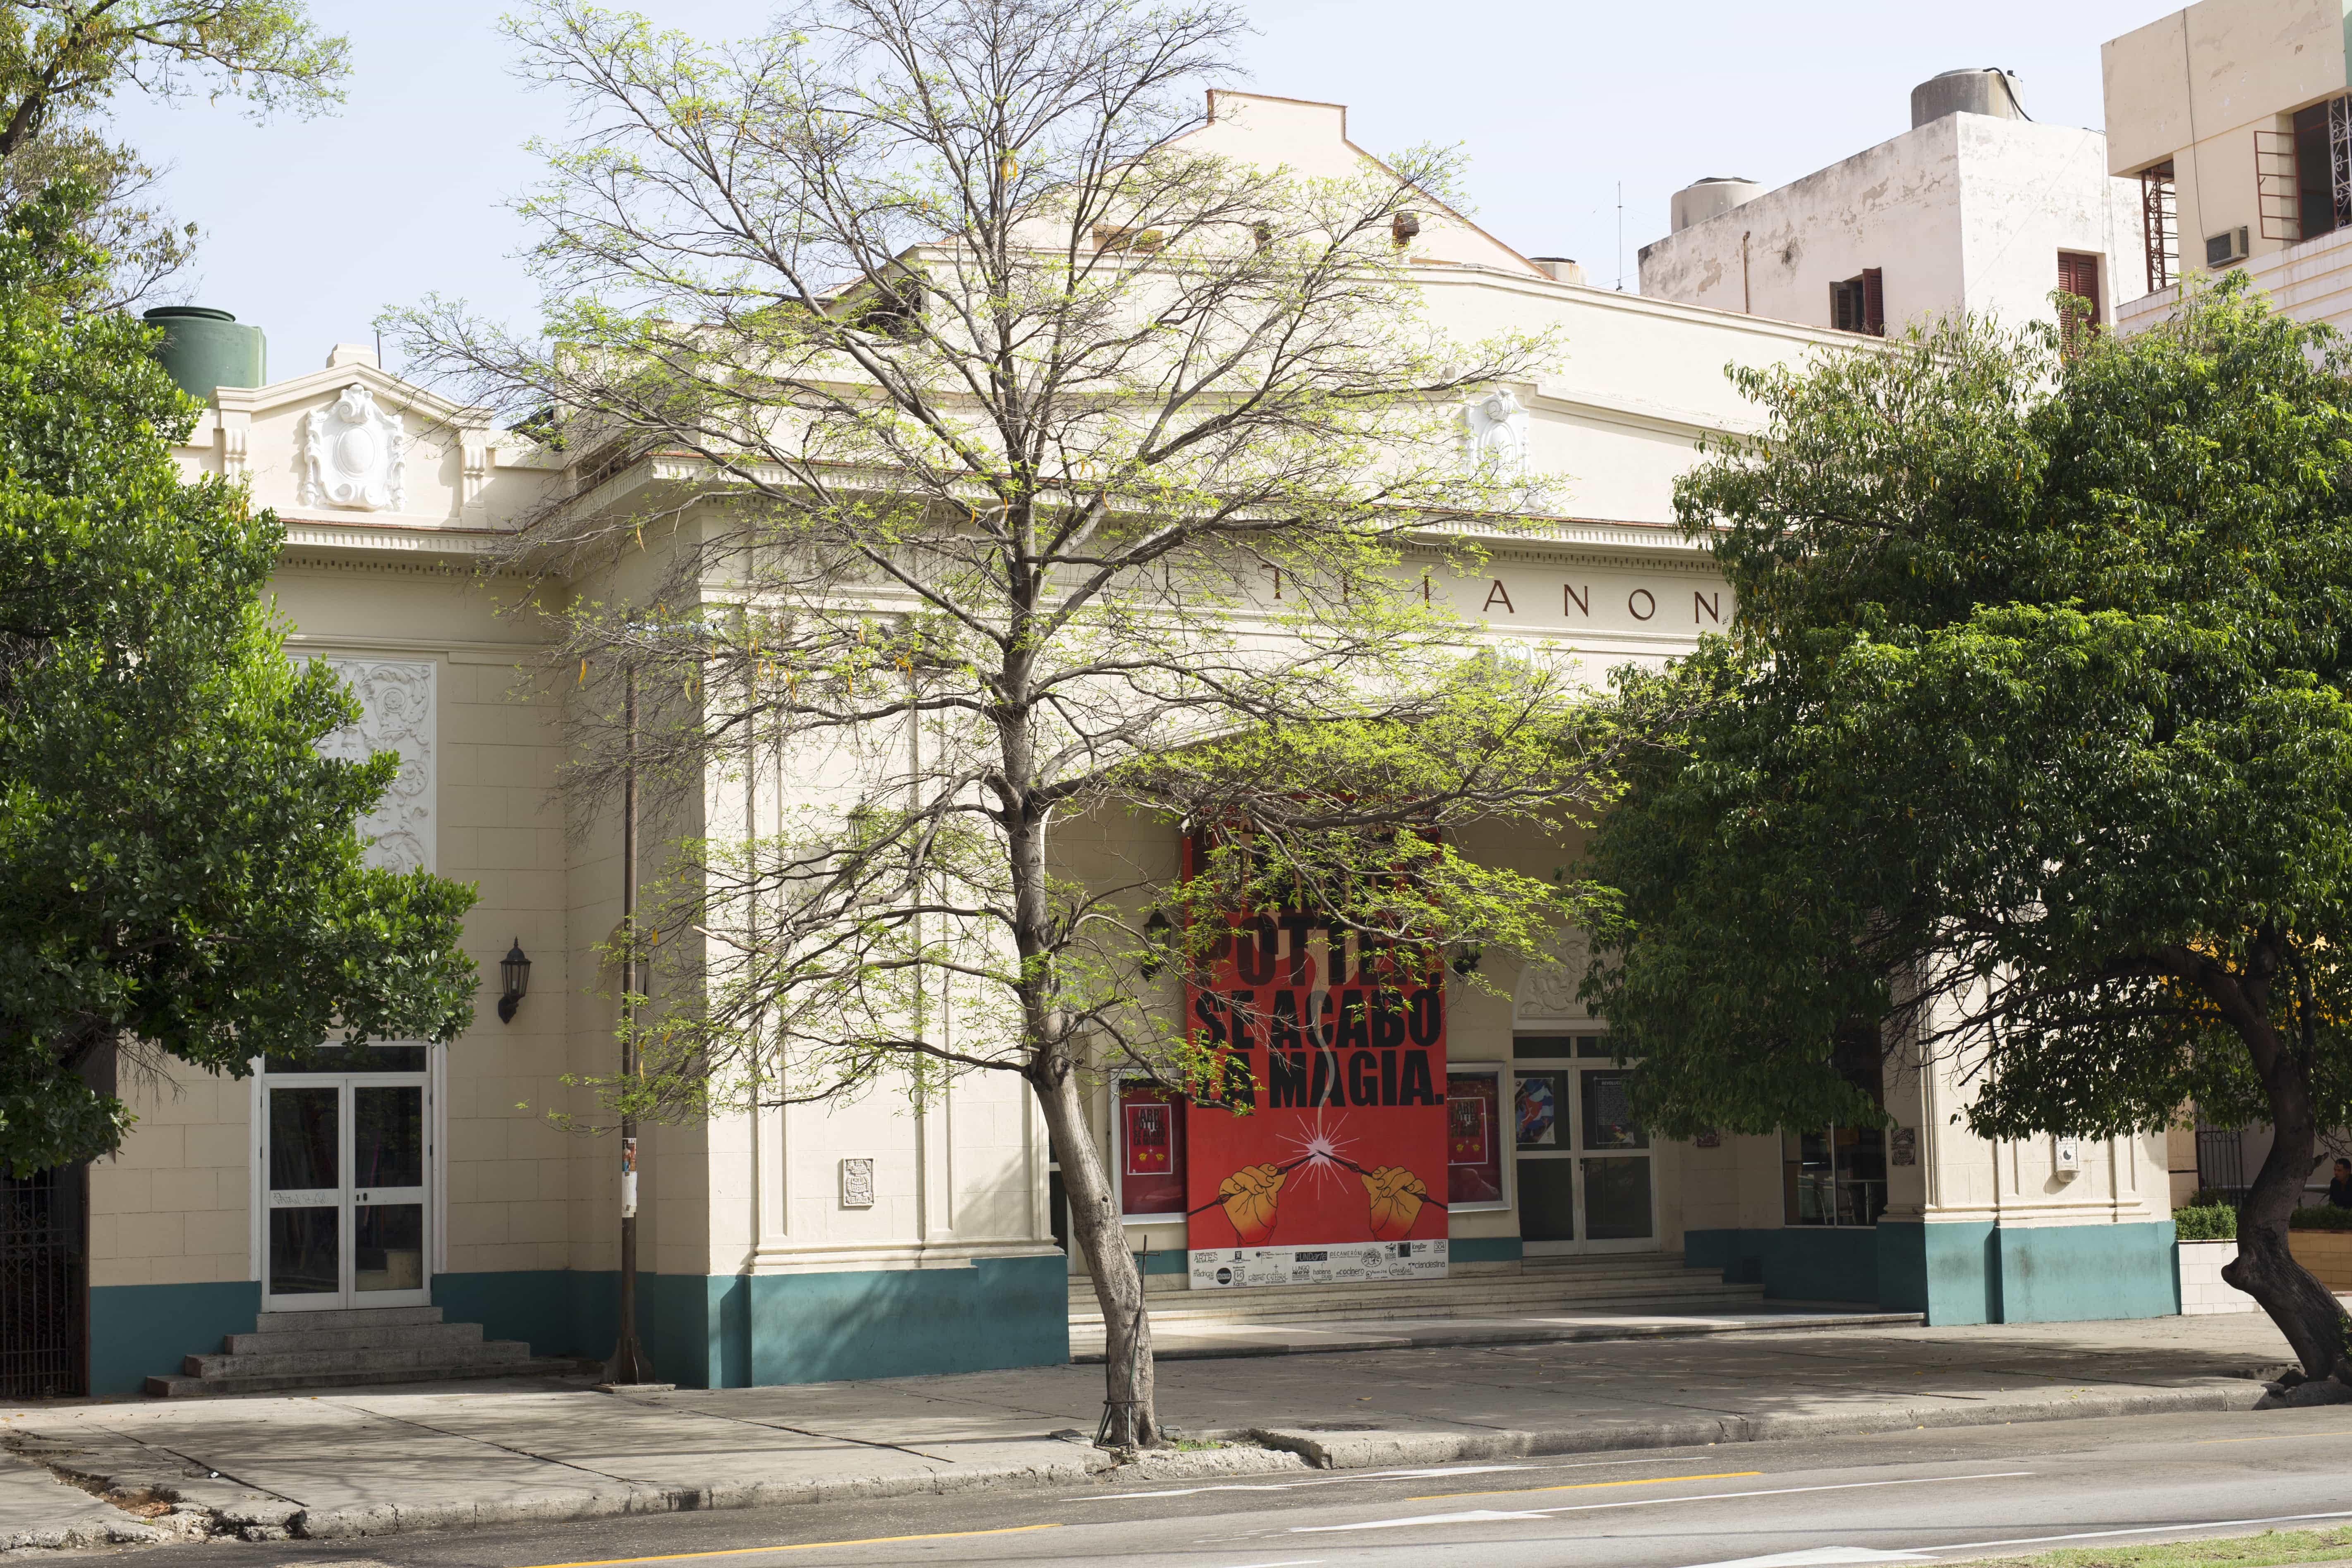 El cine teatro Trianon, sede del teatro El Publico